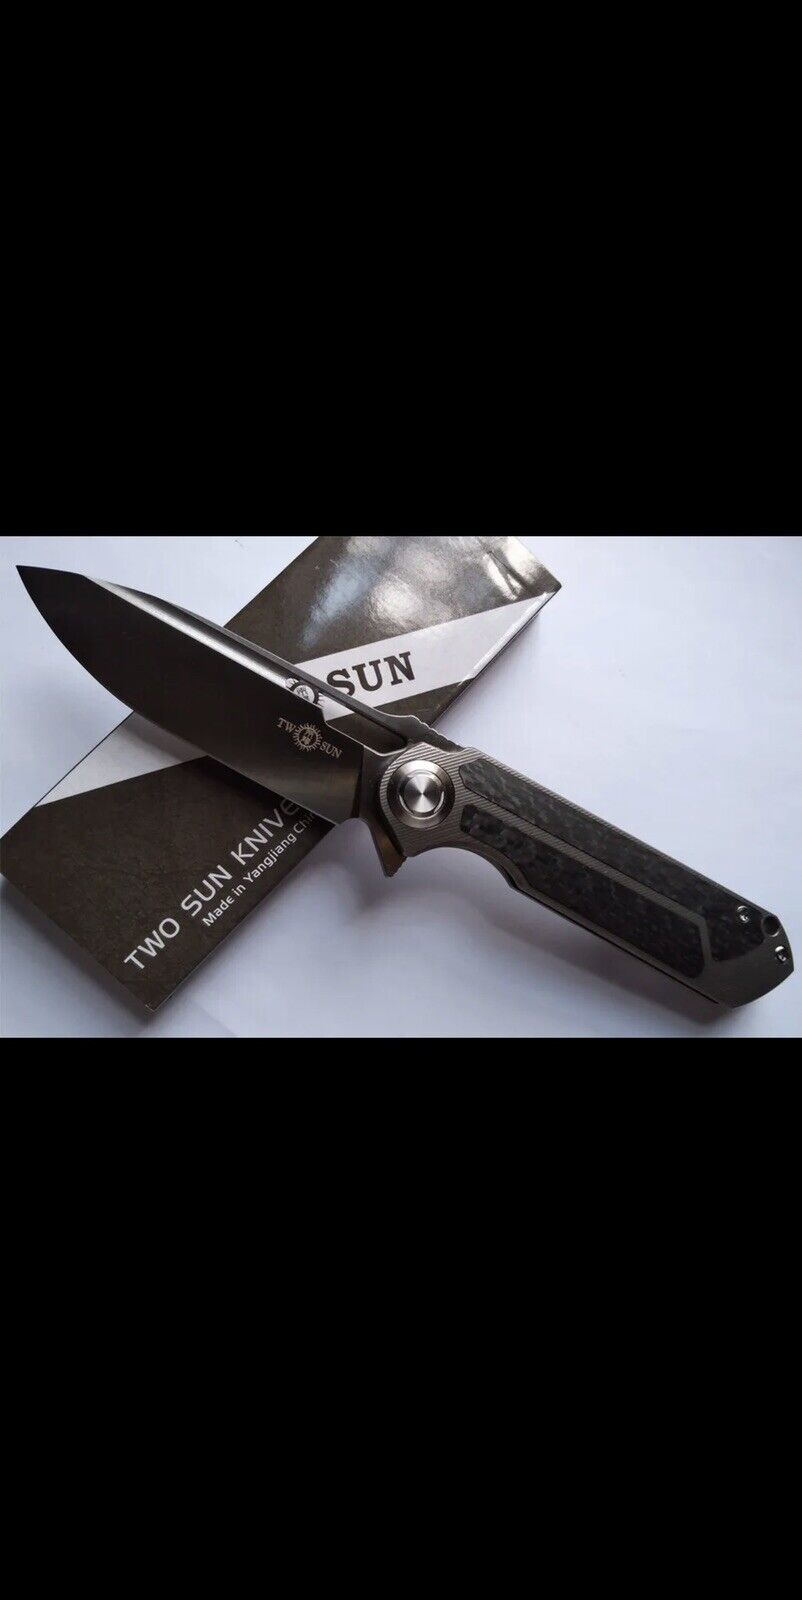 Twosun Knives Outdoor D2 TC4 Titanium Carbon Fiber Flipper TS226-D2 US SELLER